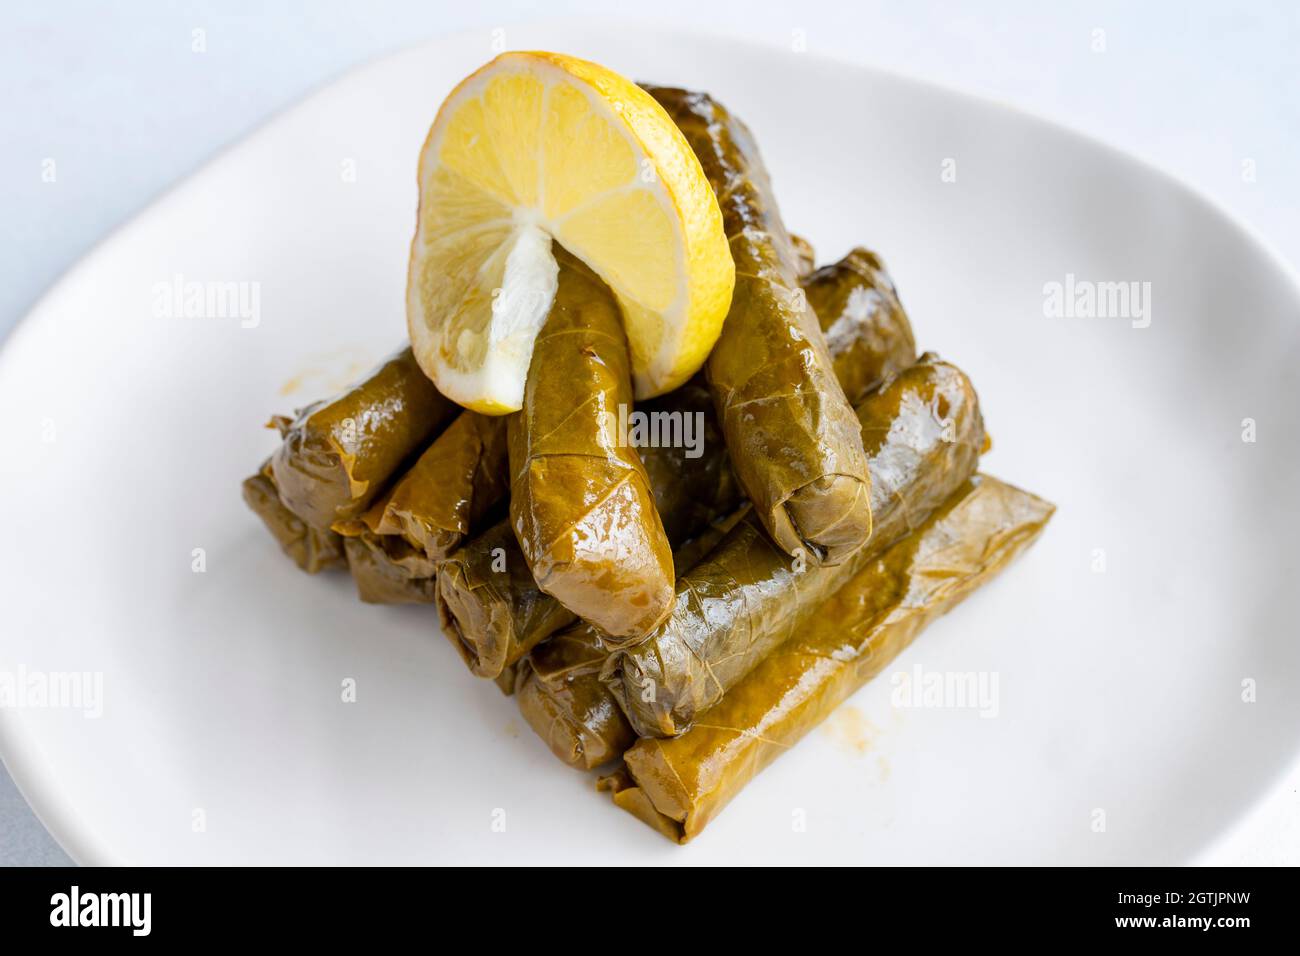 Feuilles farcies à l'huile d'olive sur fond blanc.Le goût traditionnel de la cuisine turque.Nom local zeytinyagli yaprak sarma Banque D'Images